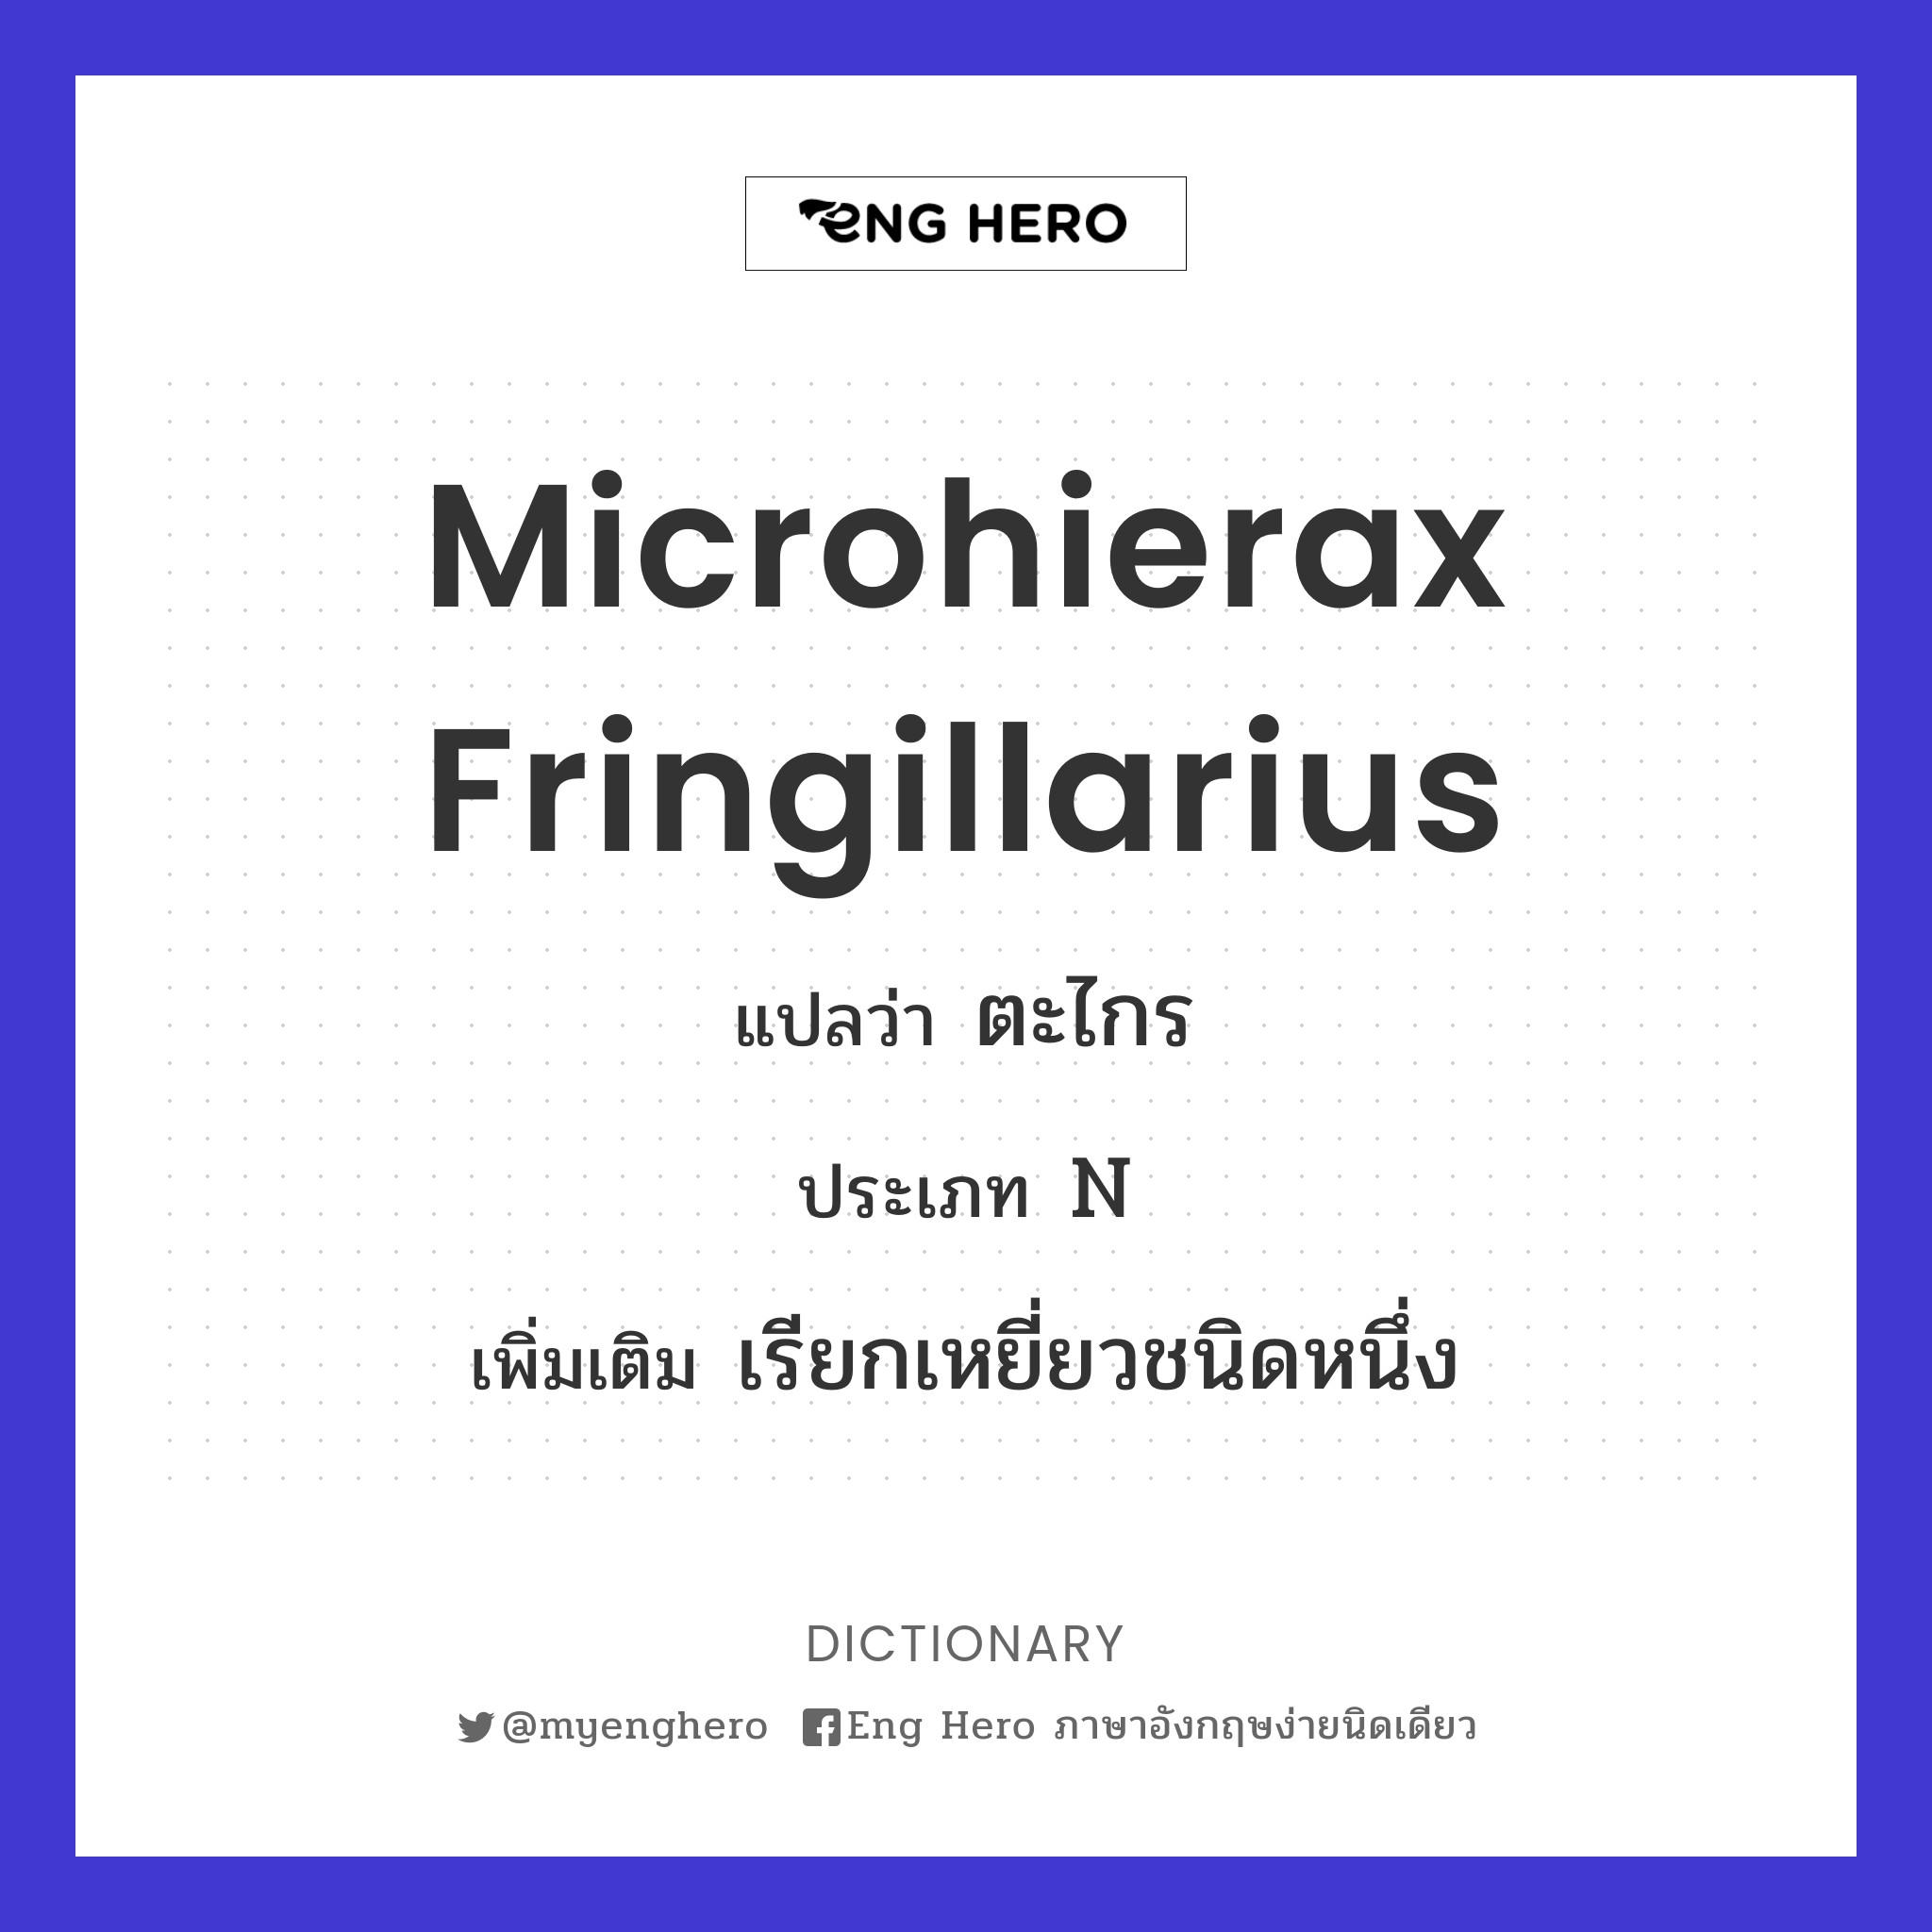 Microhierax fringillarius